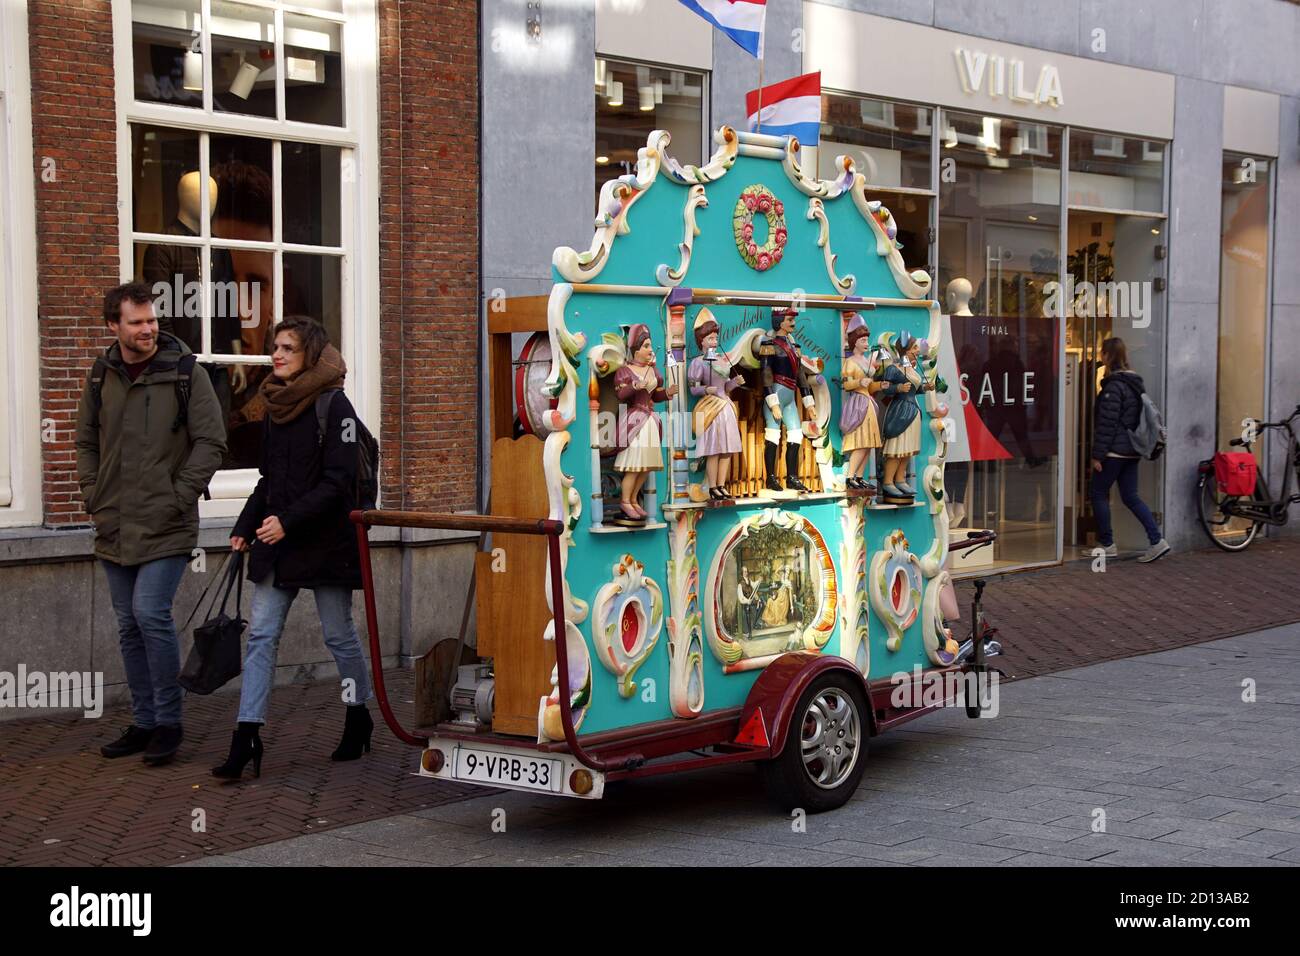 Un orgue de rue hollandais avec moulin à orgue dans la ville d'Alkmaar avec des gens de shopping. Pays-Bas, février Banque D'Images